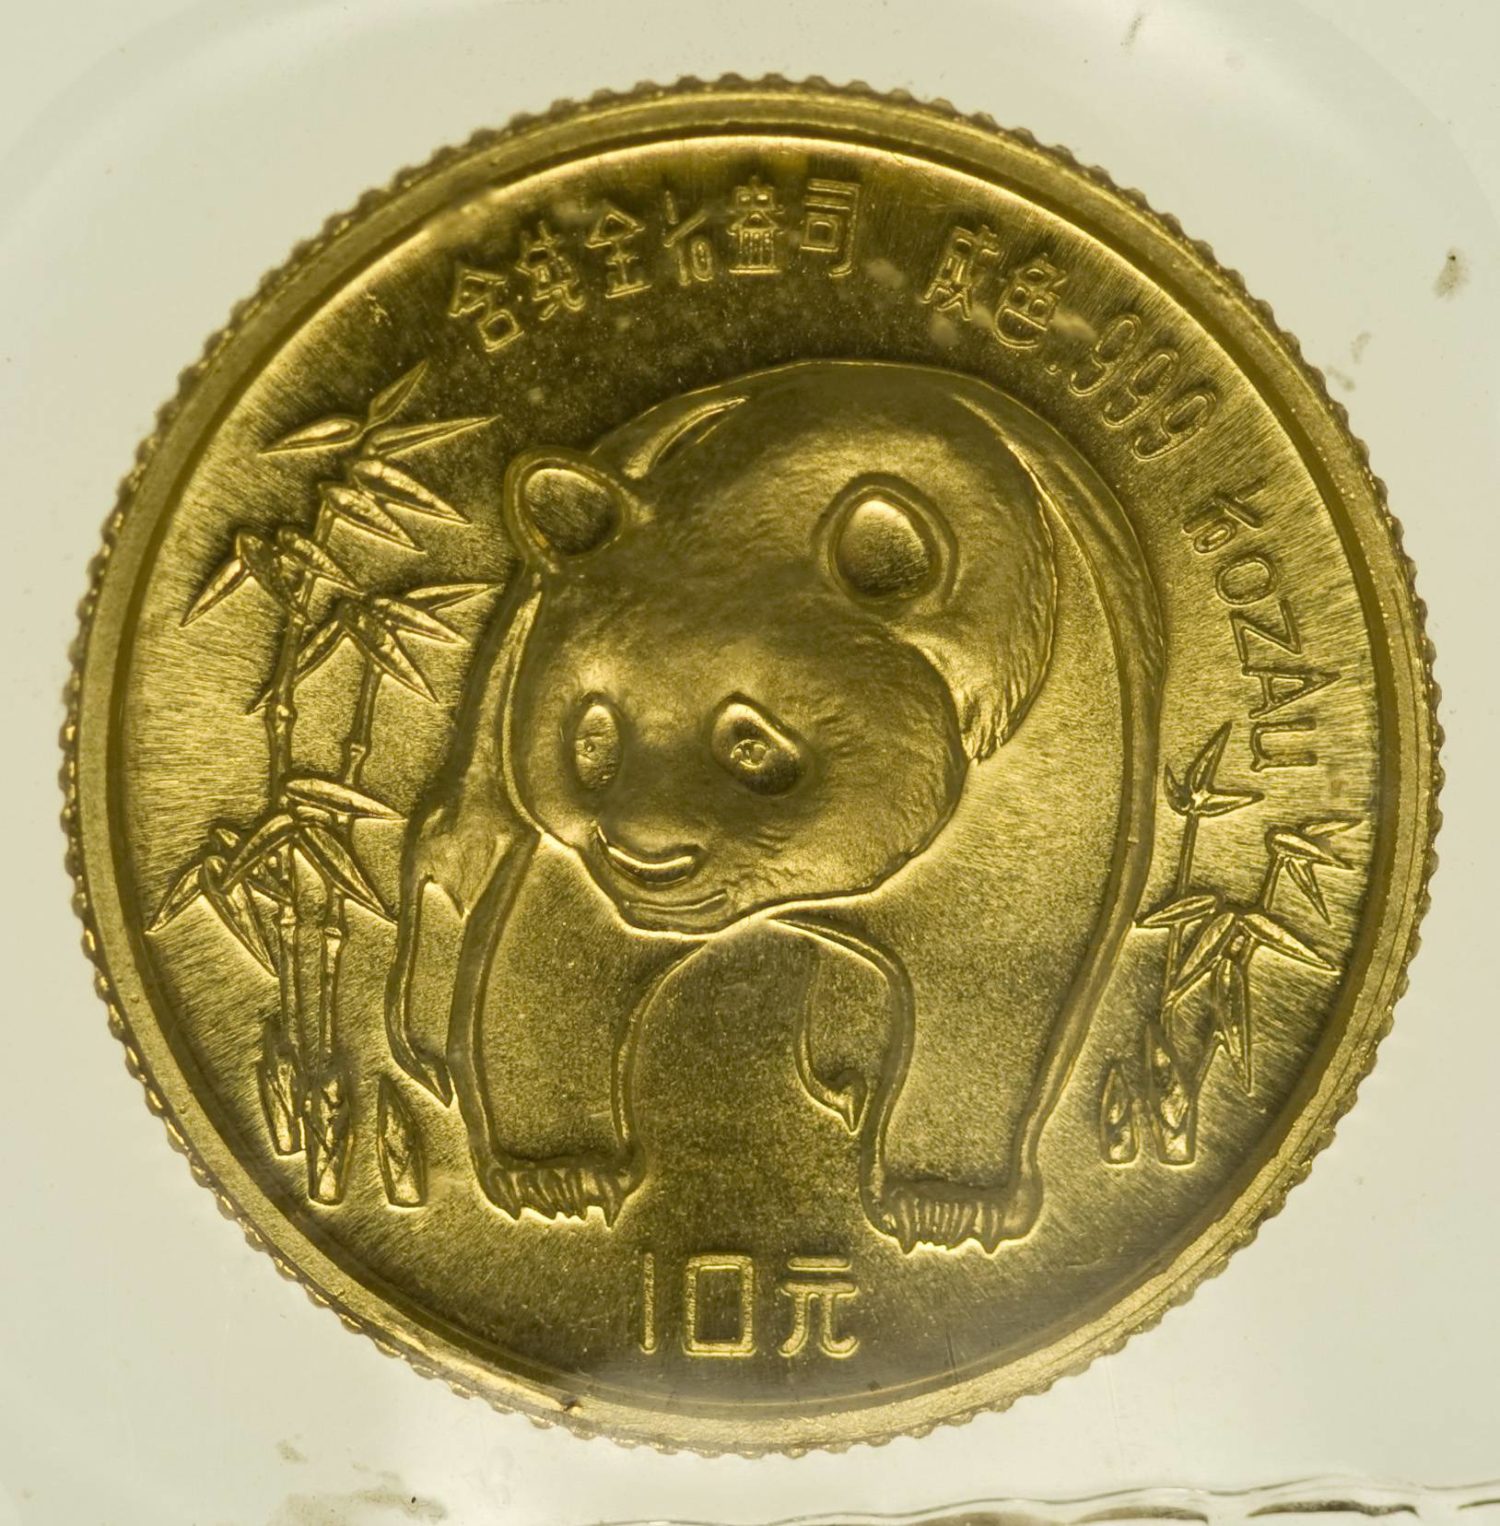 1/10 Unze Goldmünze China Panda 1986 10 Yuan 3,11 Gramm fein Gold RAR